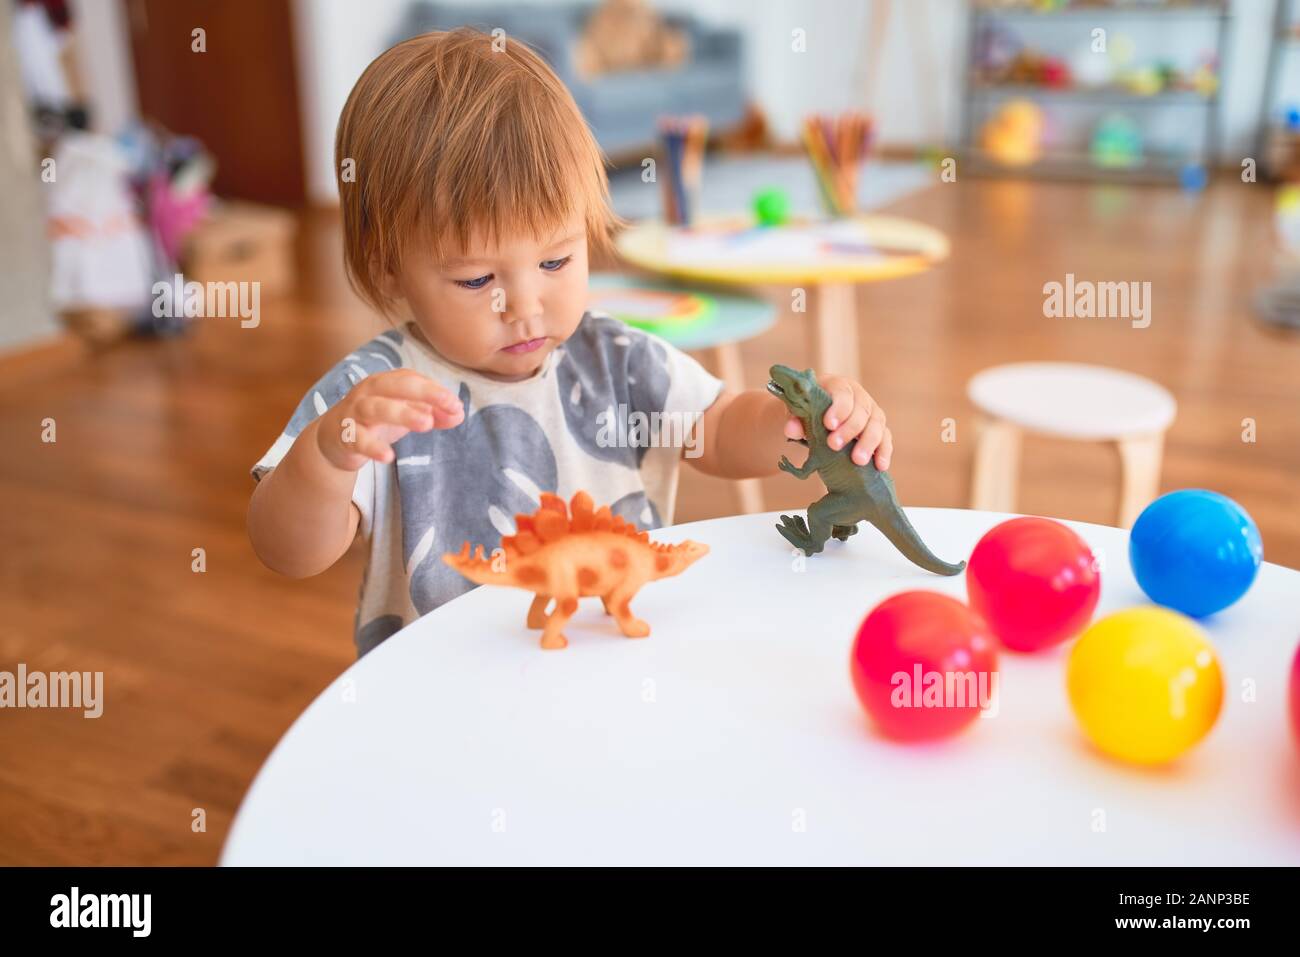 Adorable Kleinkind spielen mit Dinosauriern um viele Spielsachen im  Kindergarten Stockfotografie - Alamy